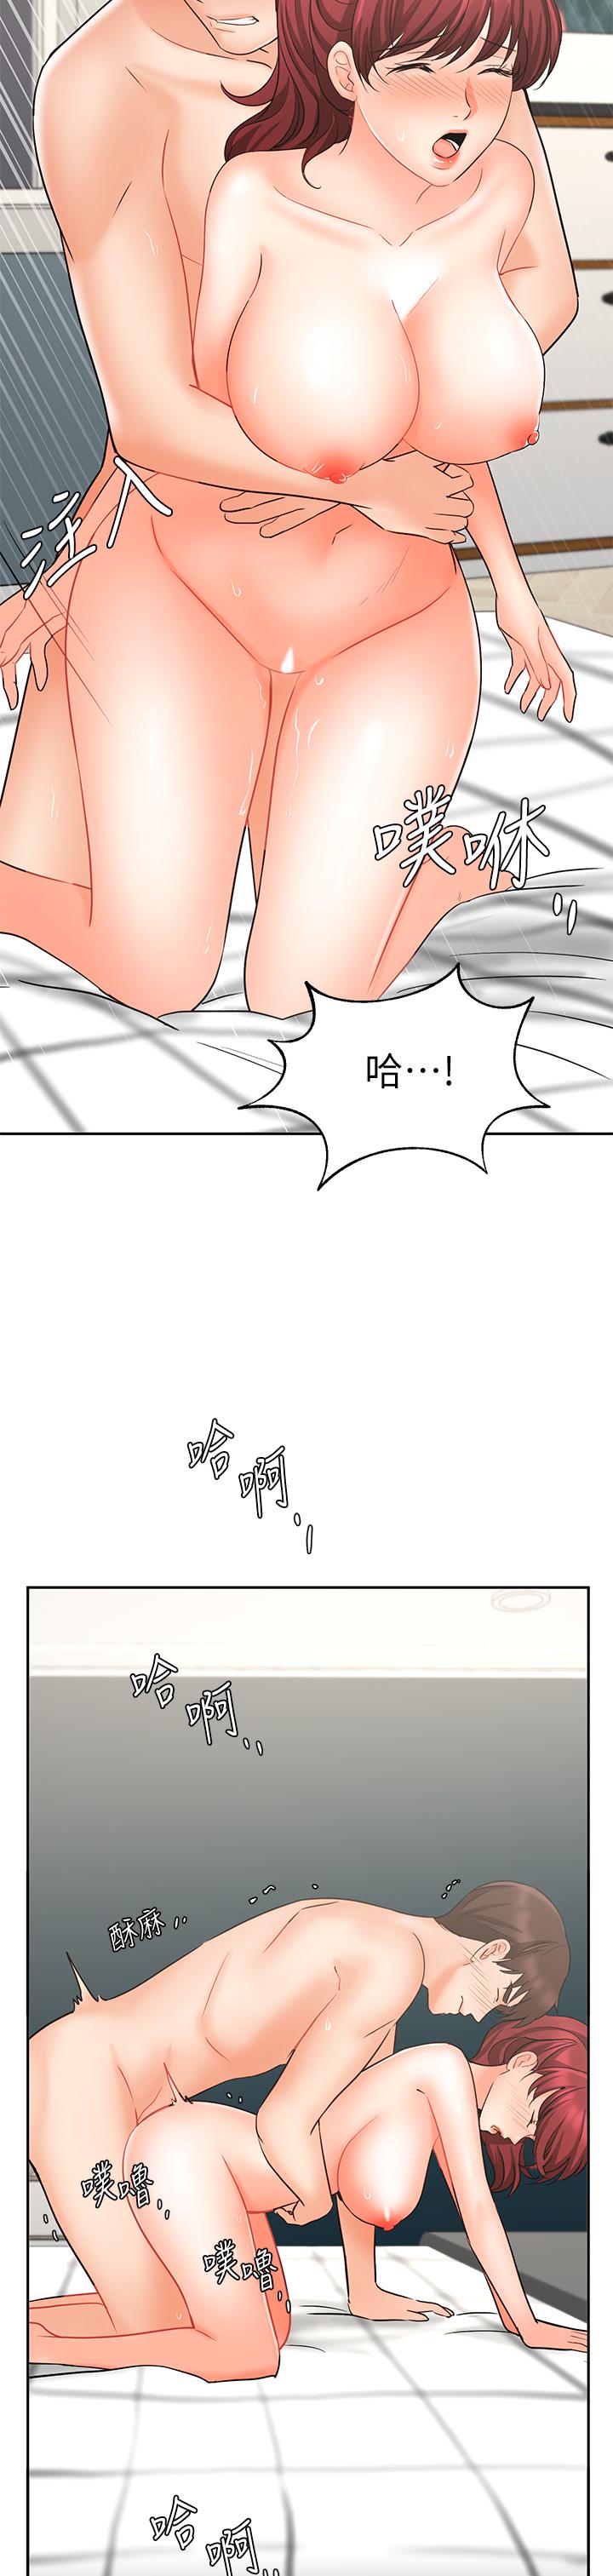 《业绩女王》漫画 第22话-火辣邻居的爱爱课程